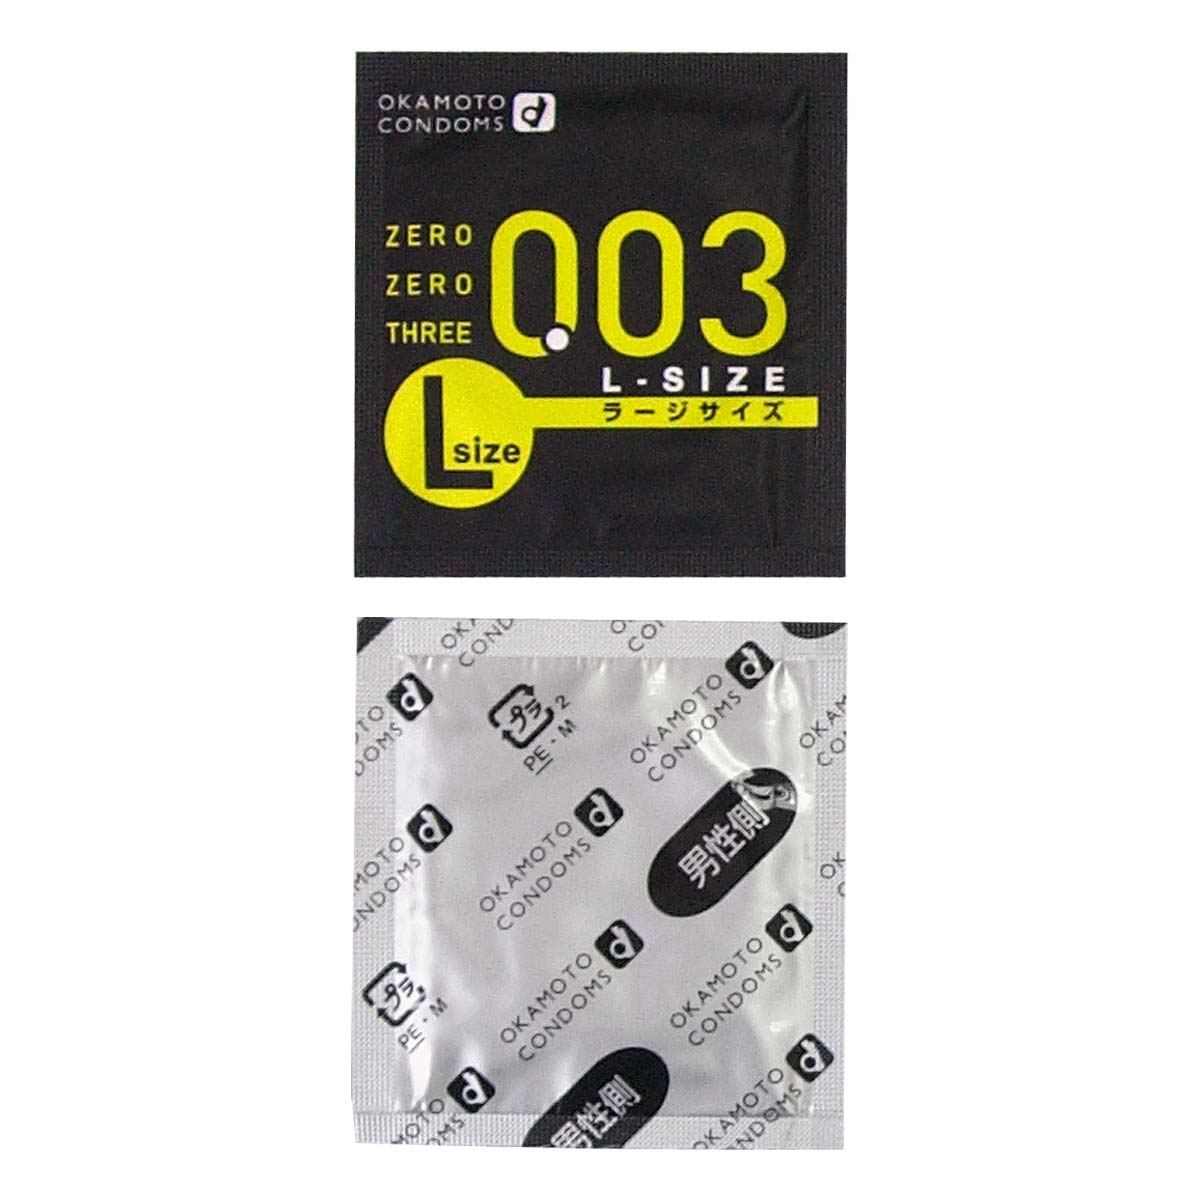 Zero Zero Three 0.03 L-size (Japan Edition) 58mm 2 pieces Latex Condom-p_2